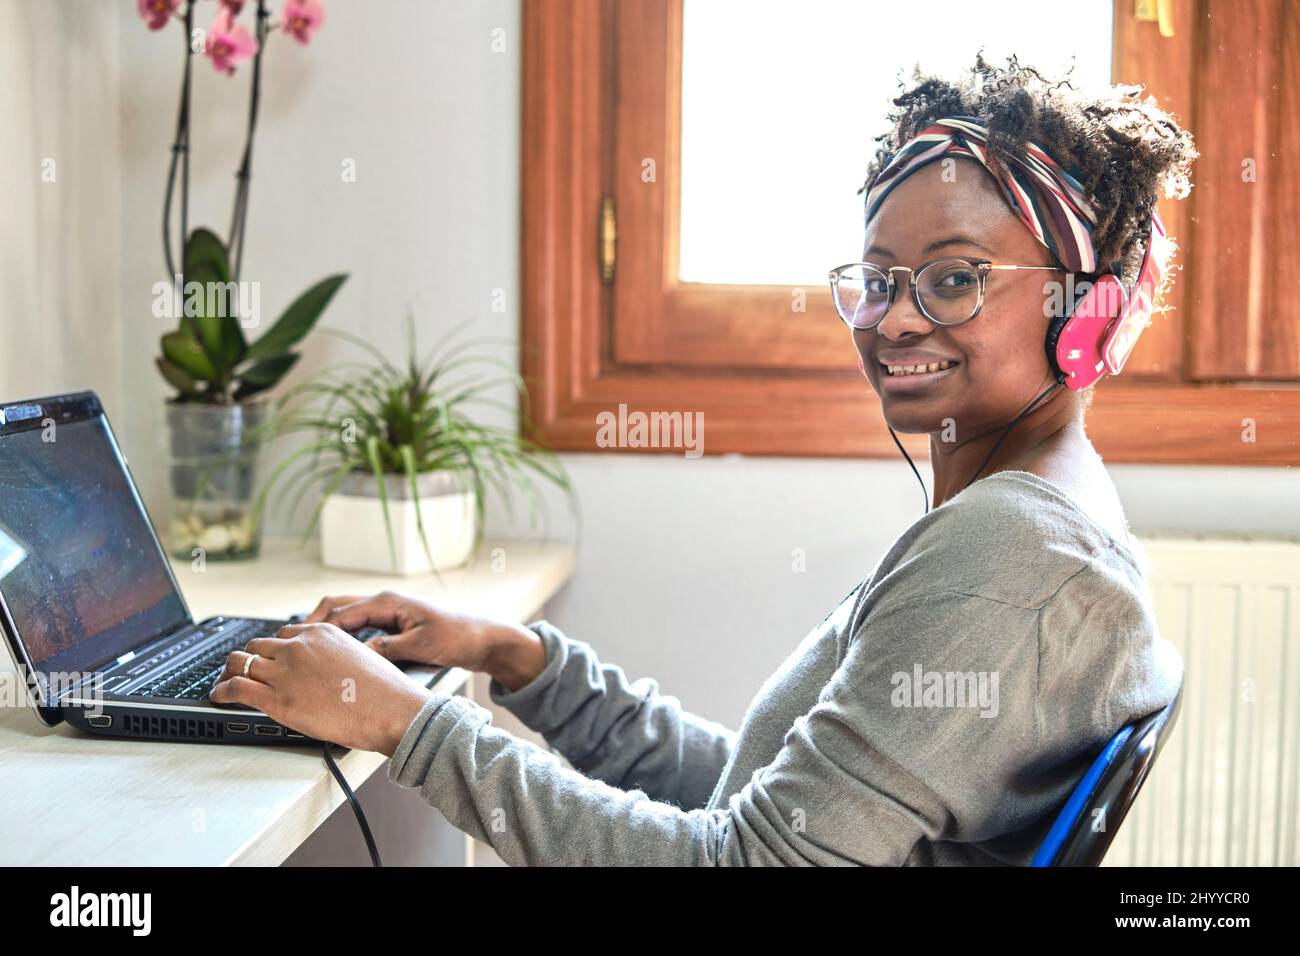 Junge schwarze Frau mit Afro-Frisur und einem Computer und Musik hören mit Kopfhörern in einem Haus. Lifestyle-Konzept. Stockfoto